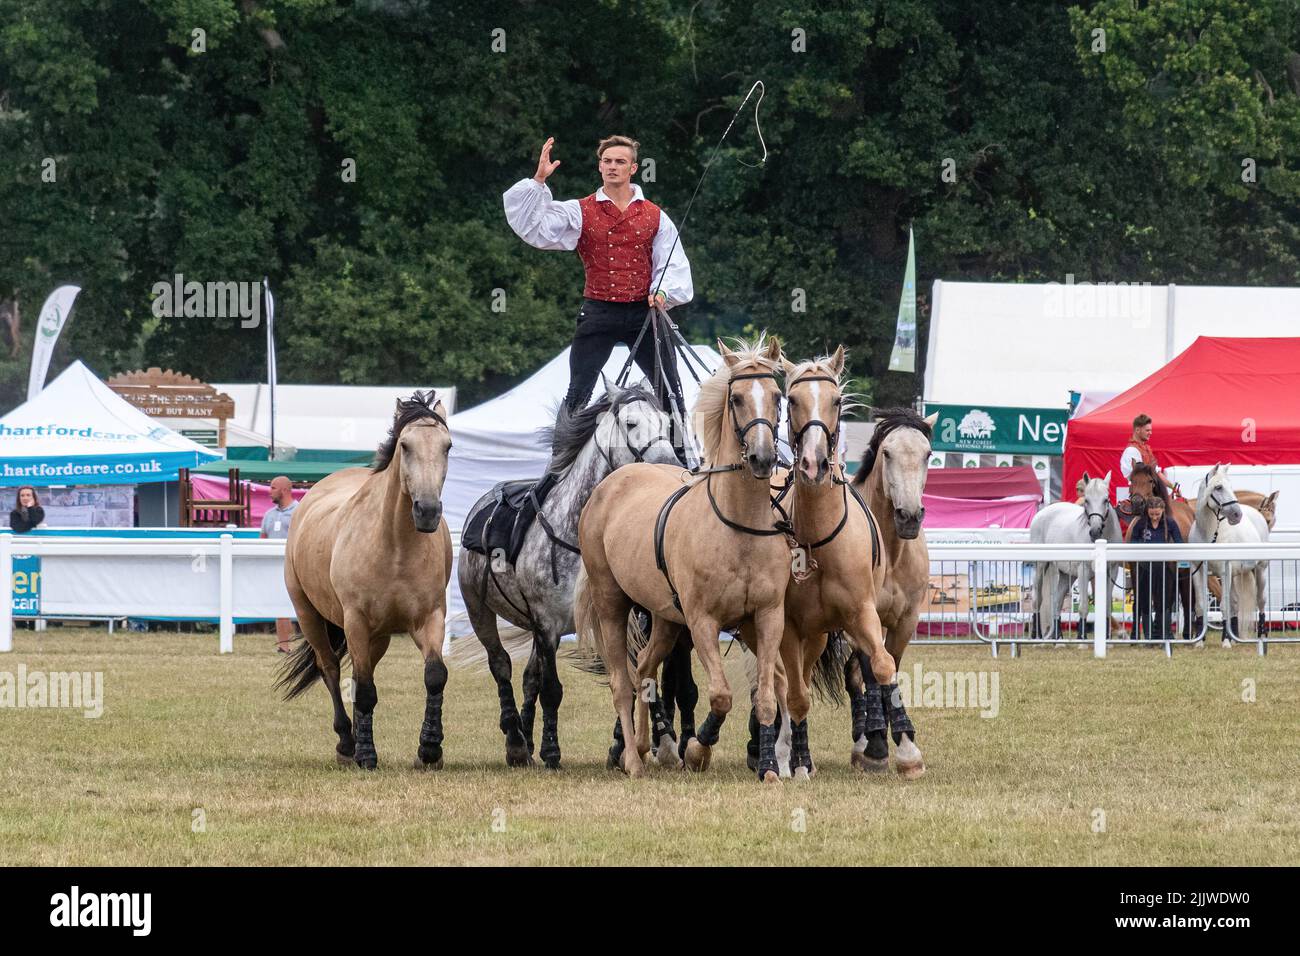 Atkinson action Horses au New Forest and Hampshire County Show en juillet 2022, Angleterre, Royaume-Uni. Ben Atkinson, équitation romaine avec une équipe de chevaux Banque D'Images